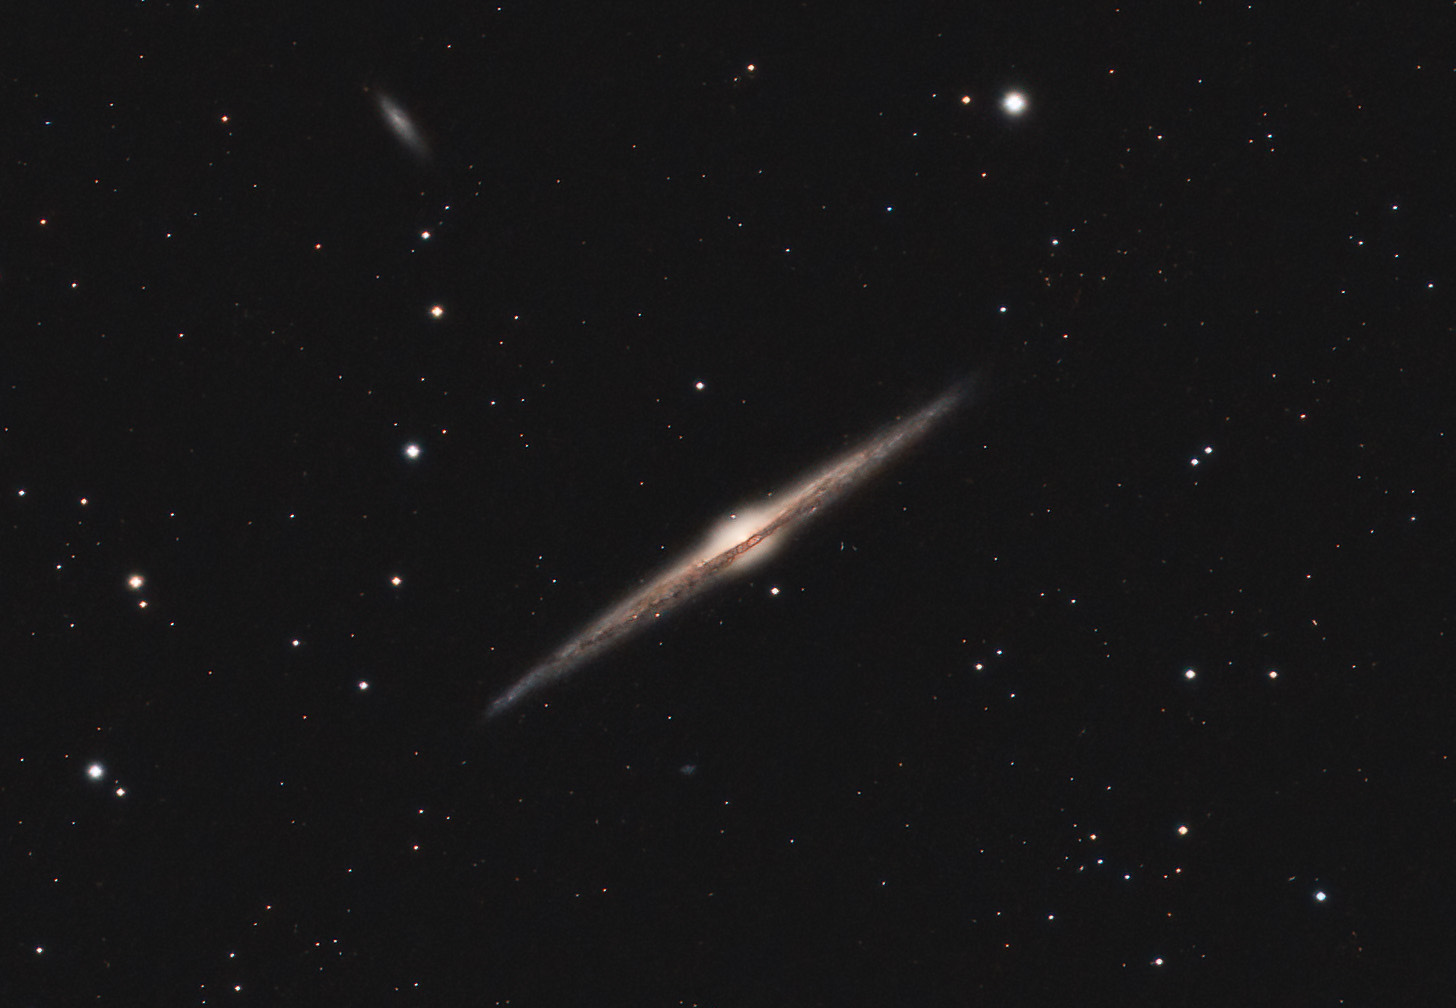 606a0a77ab582_NGC4565-41x180sec-Berche-recadre.jpg.a0e5820cdc953223f994aecf1a084ff6.jpg